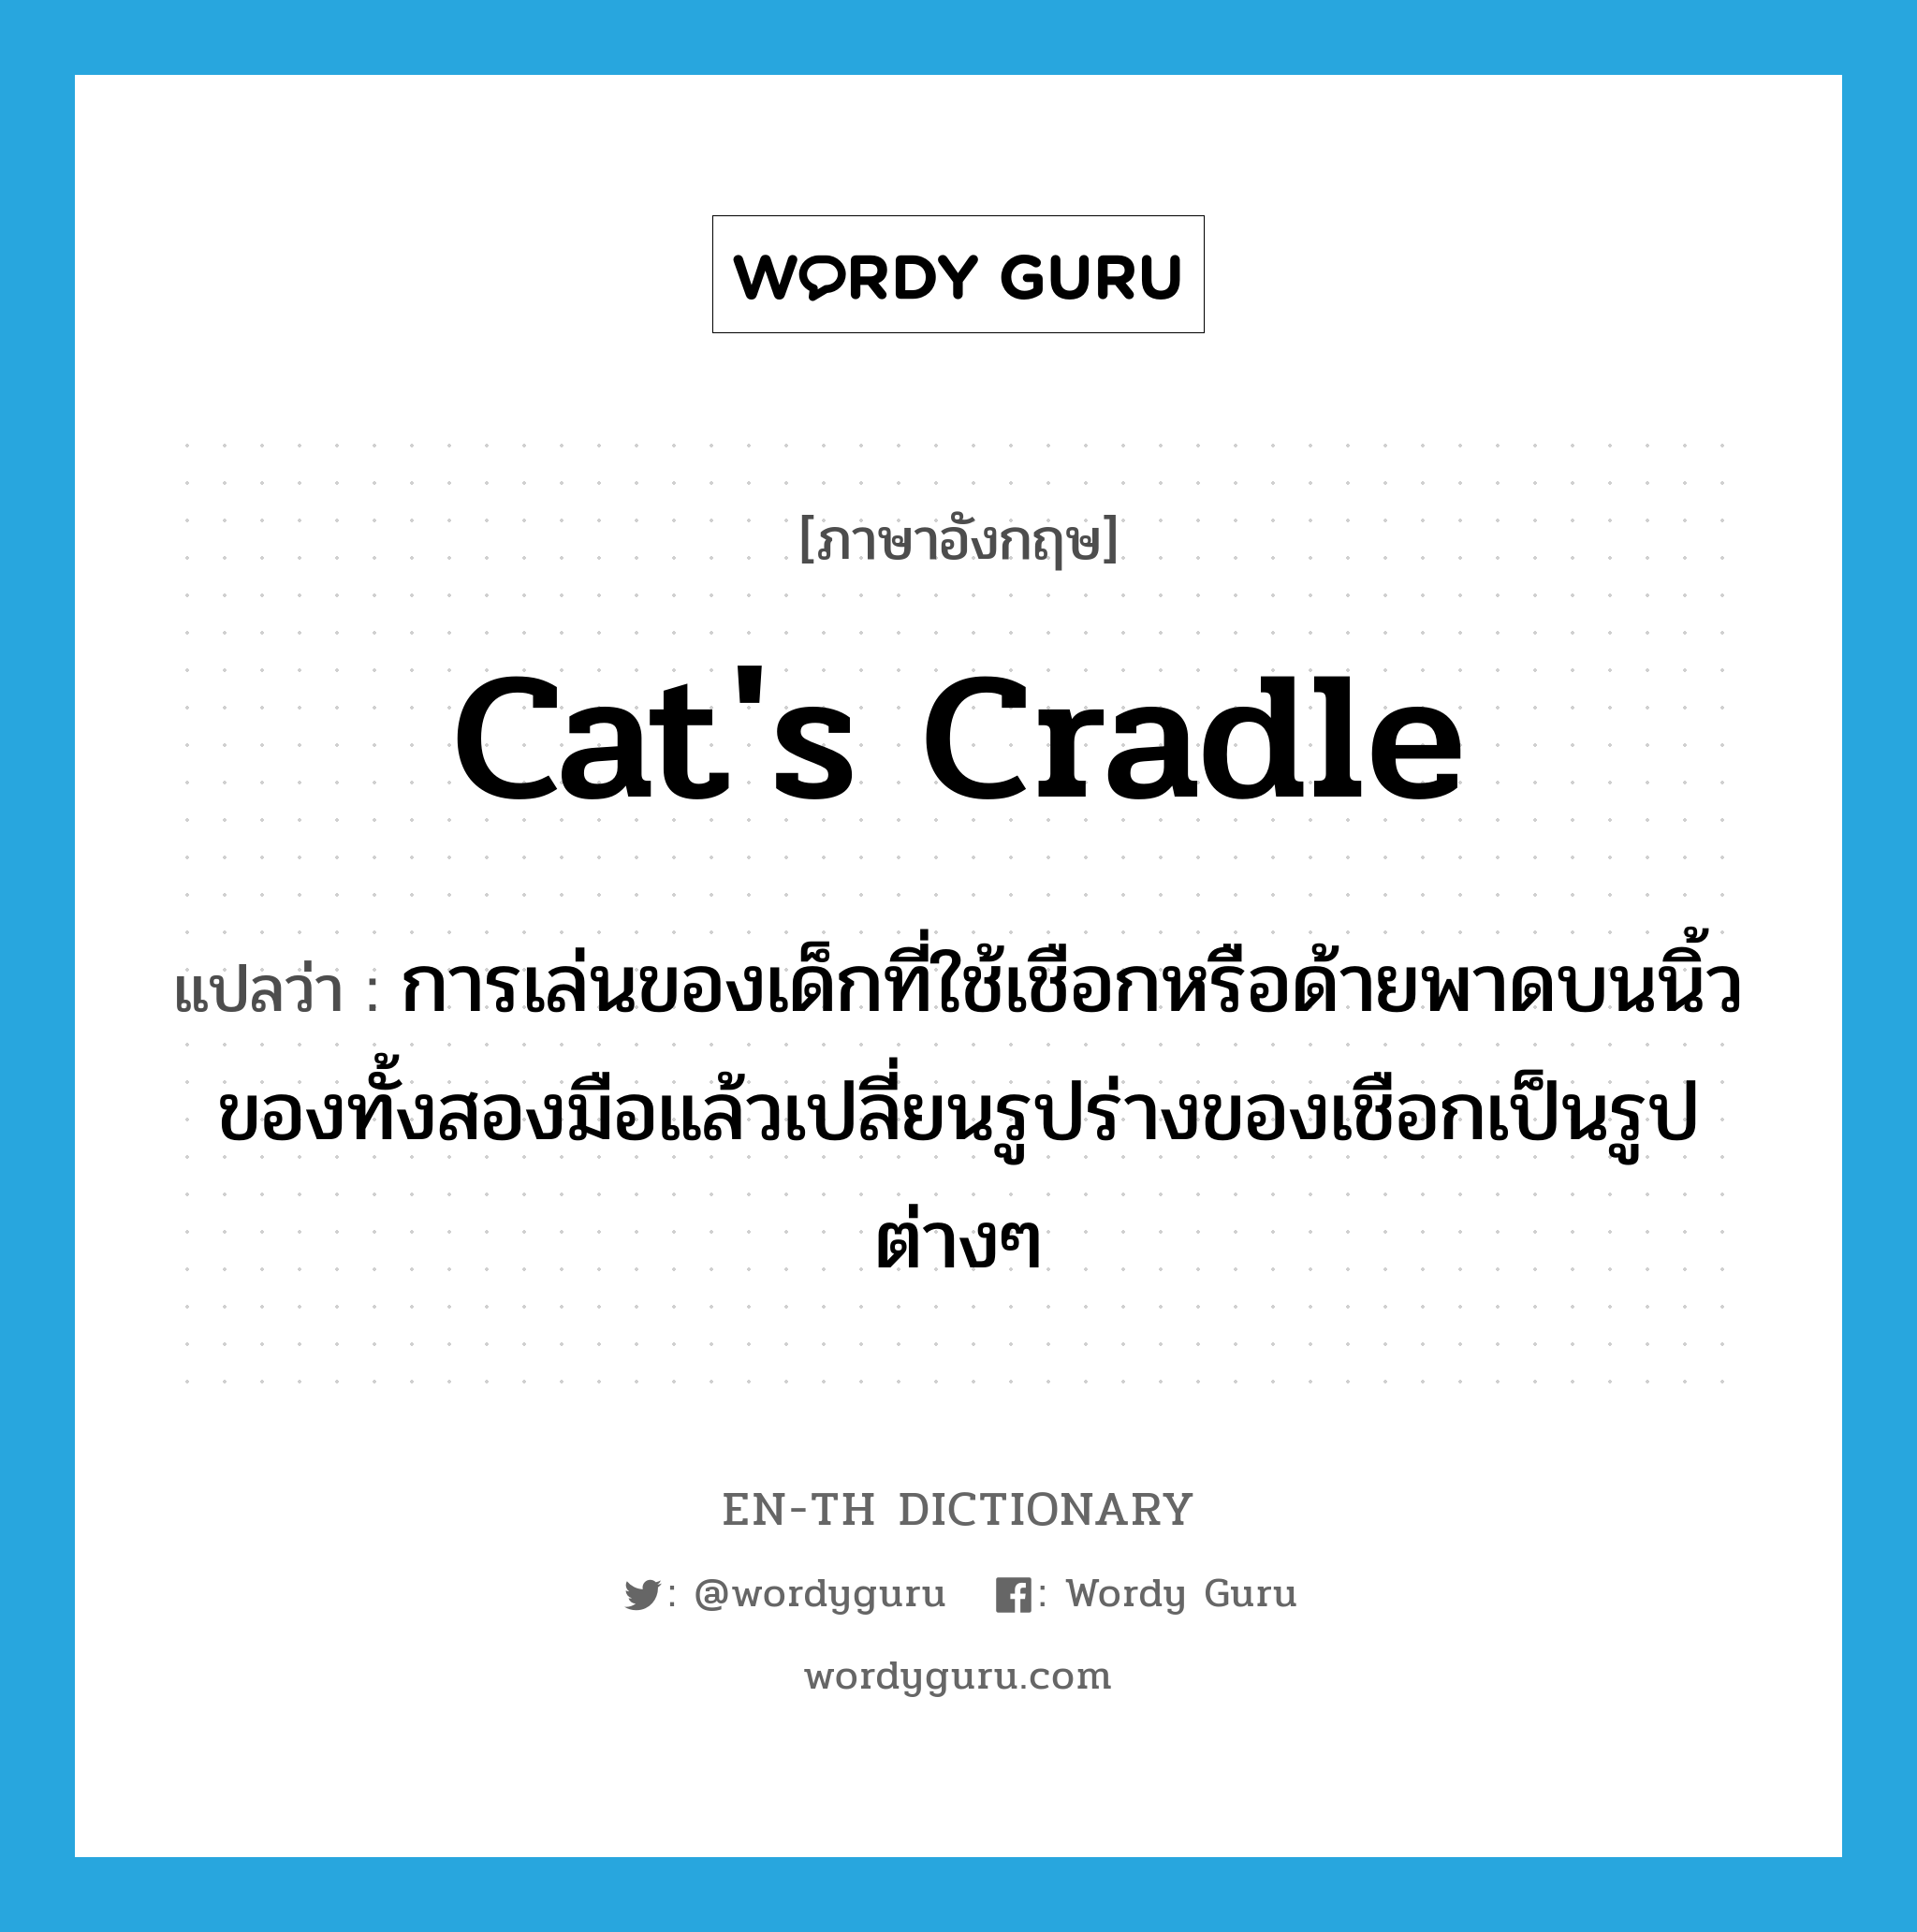 cat's cradle แปลว่า?, คำศัพท์ภาษาอังกฤษ cat's cradle แปลว่า การเล่นของเด็กที่ใช้เชือกหรือด้ายพาดบนนิ้วของทั้งสองมือแล้วเปลี่ยนรูปร่างของเชือกเป็นรูปต่างๆ ประเภท N หมวด N